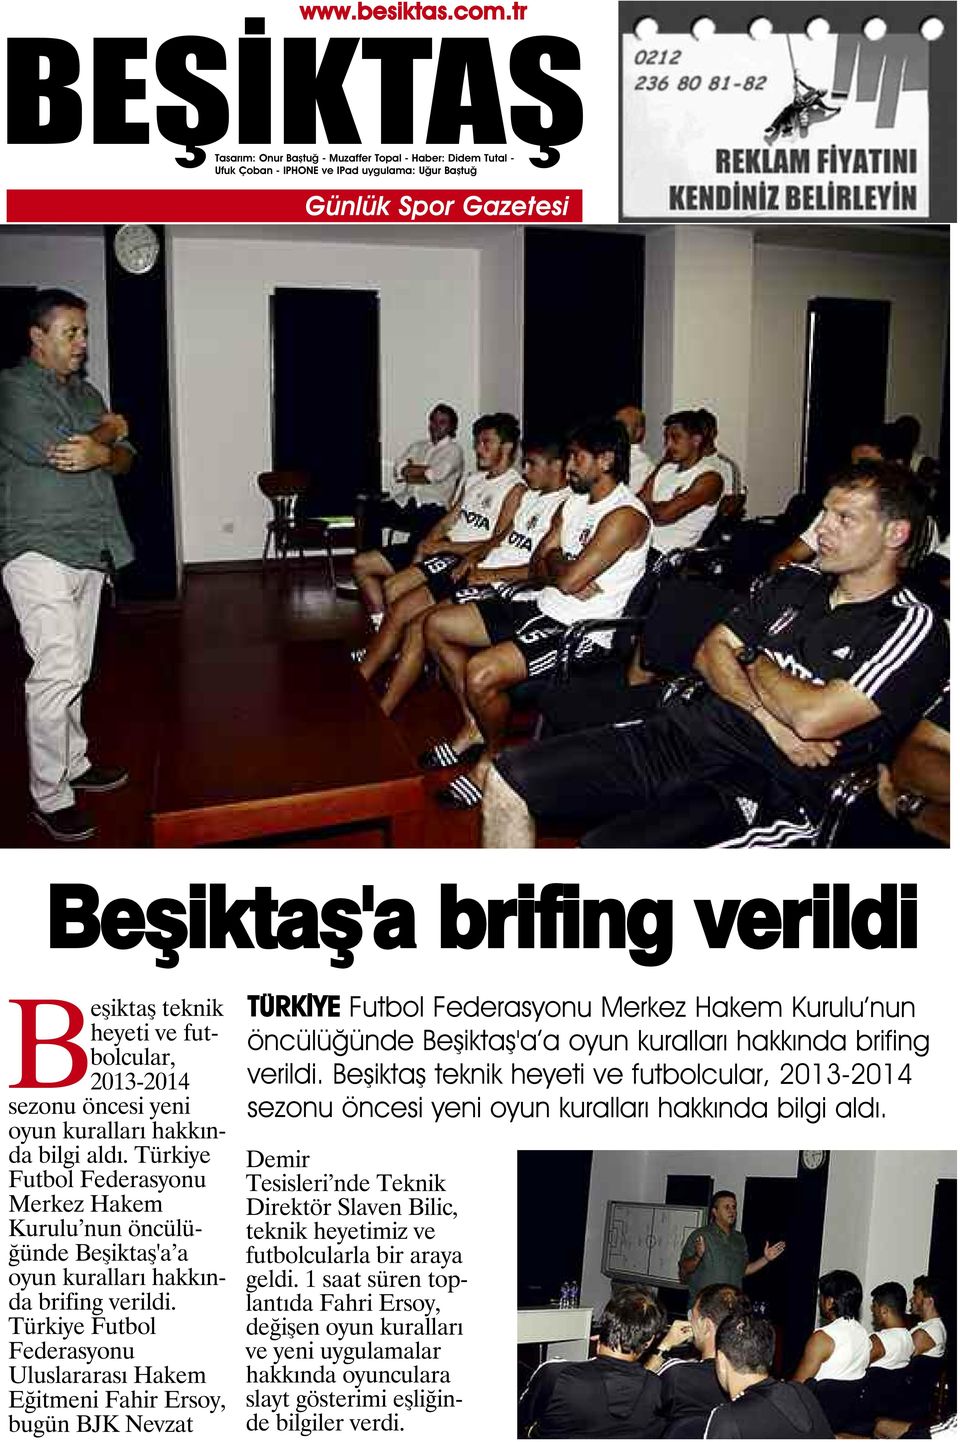 Türkiye Futbol Federasyonu Uluslararası Hakem Eğitmeni Fahir Ersoy, bugün BJK Nevzat TÜRKİYE Futbol Federasyonu Merkez Hakem Kurulu nun öncülüğünde Beşiktaş'a a oyun kuralları hakkında brifing